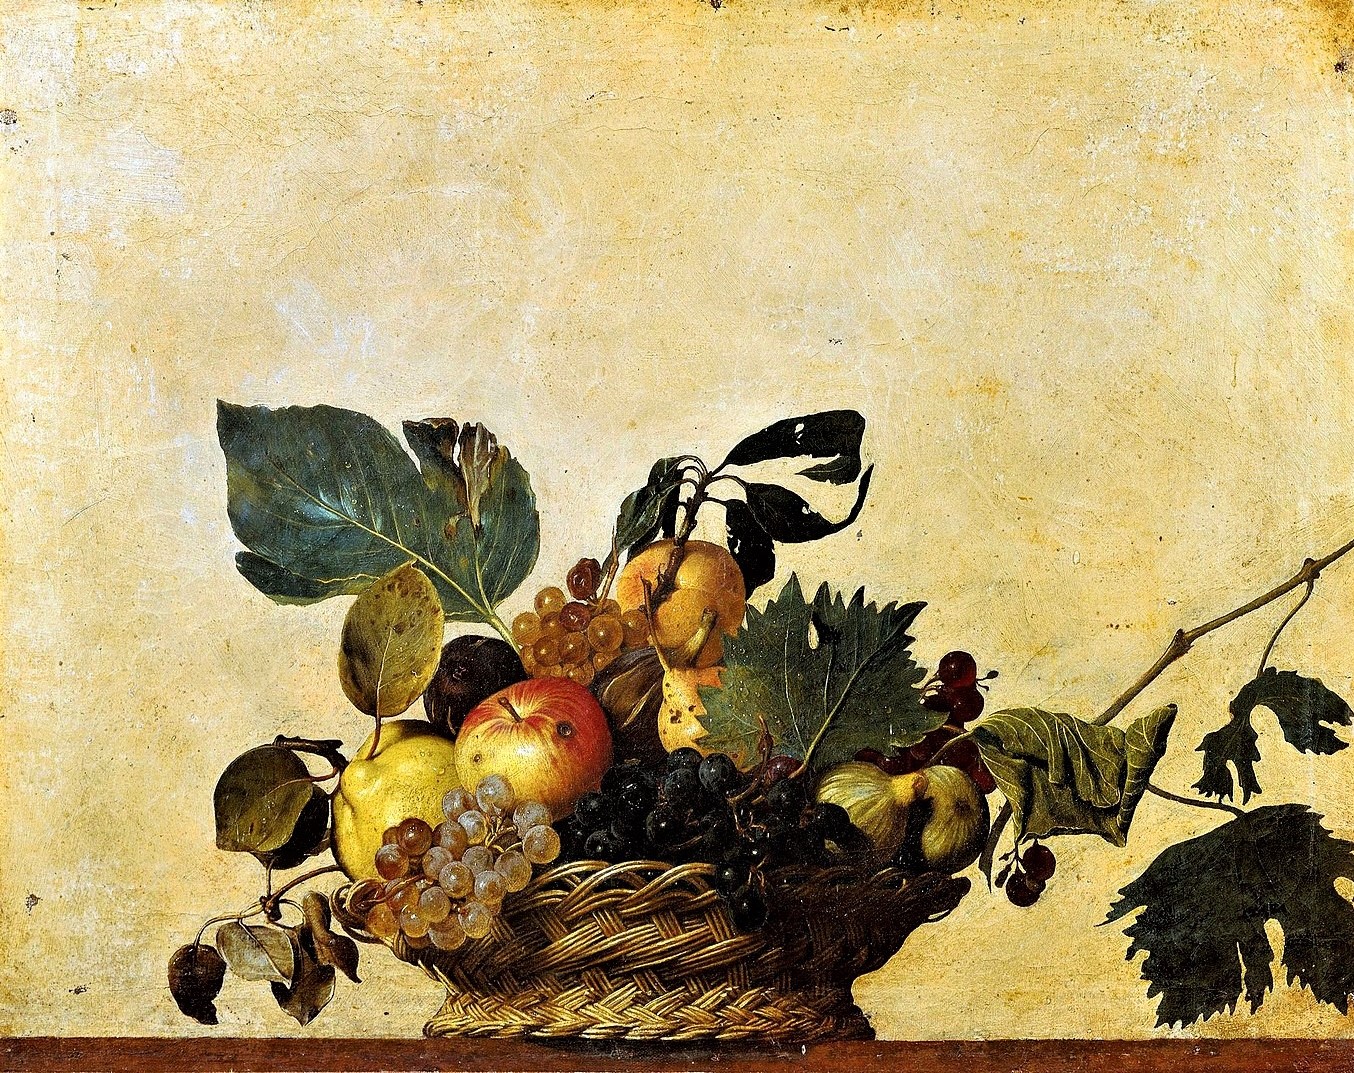  『果物籠』 ミケランジェロ・メリージ・ダ・カラヴァッジオ 【1597】